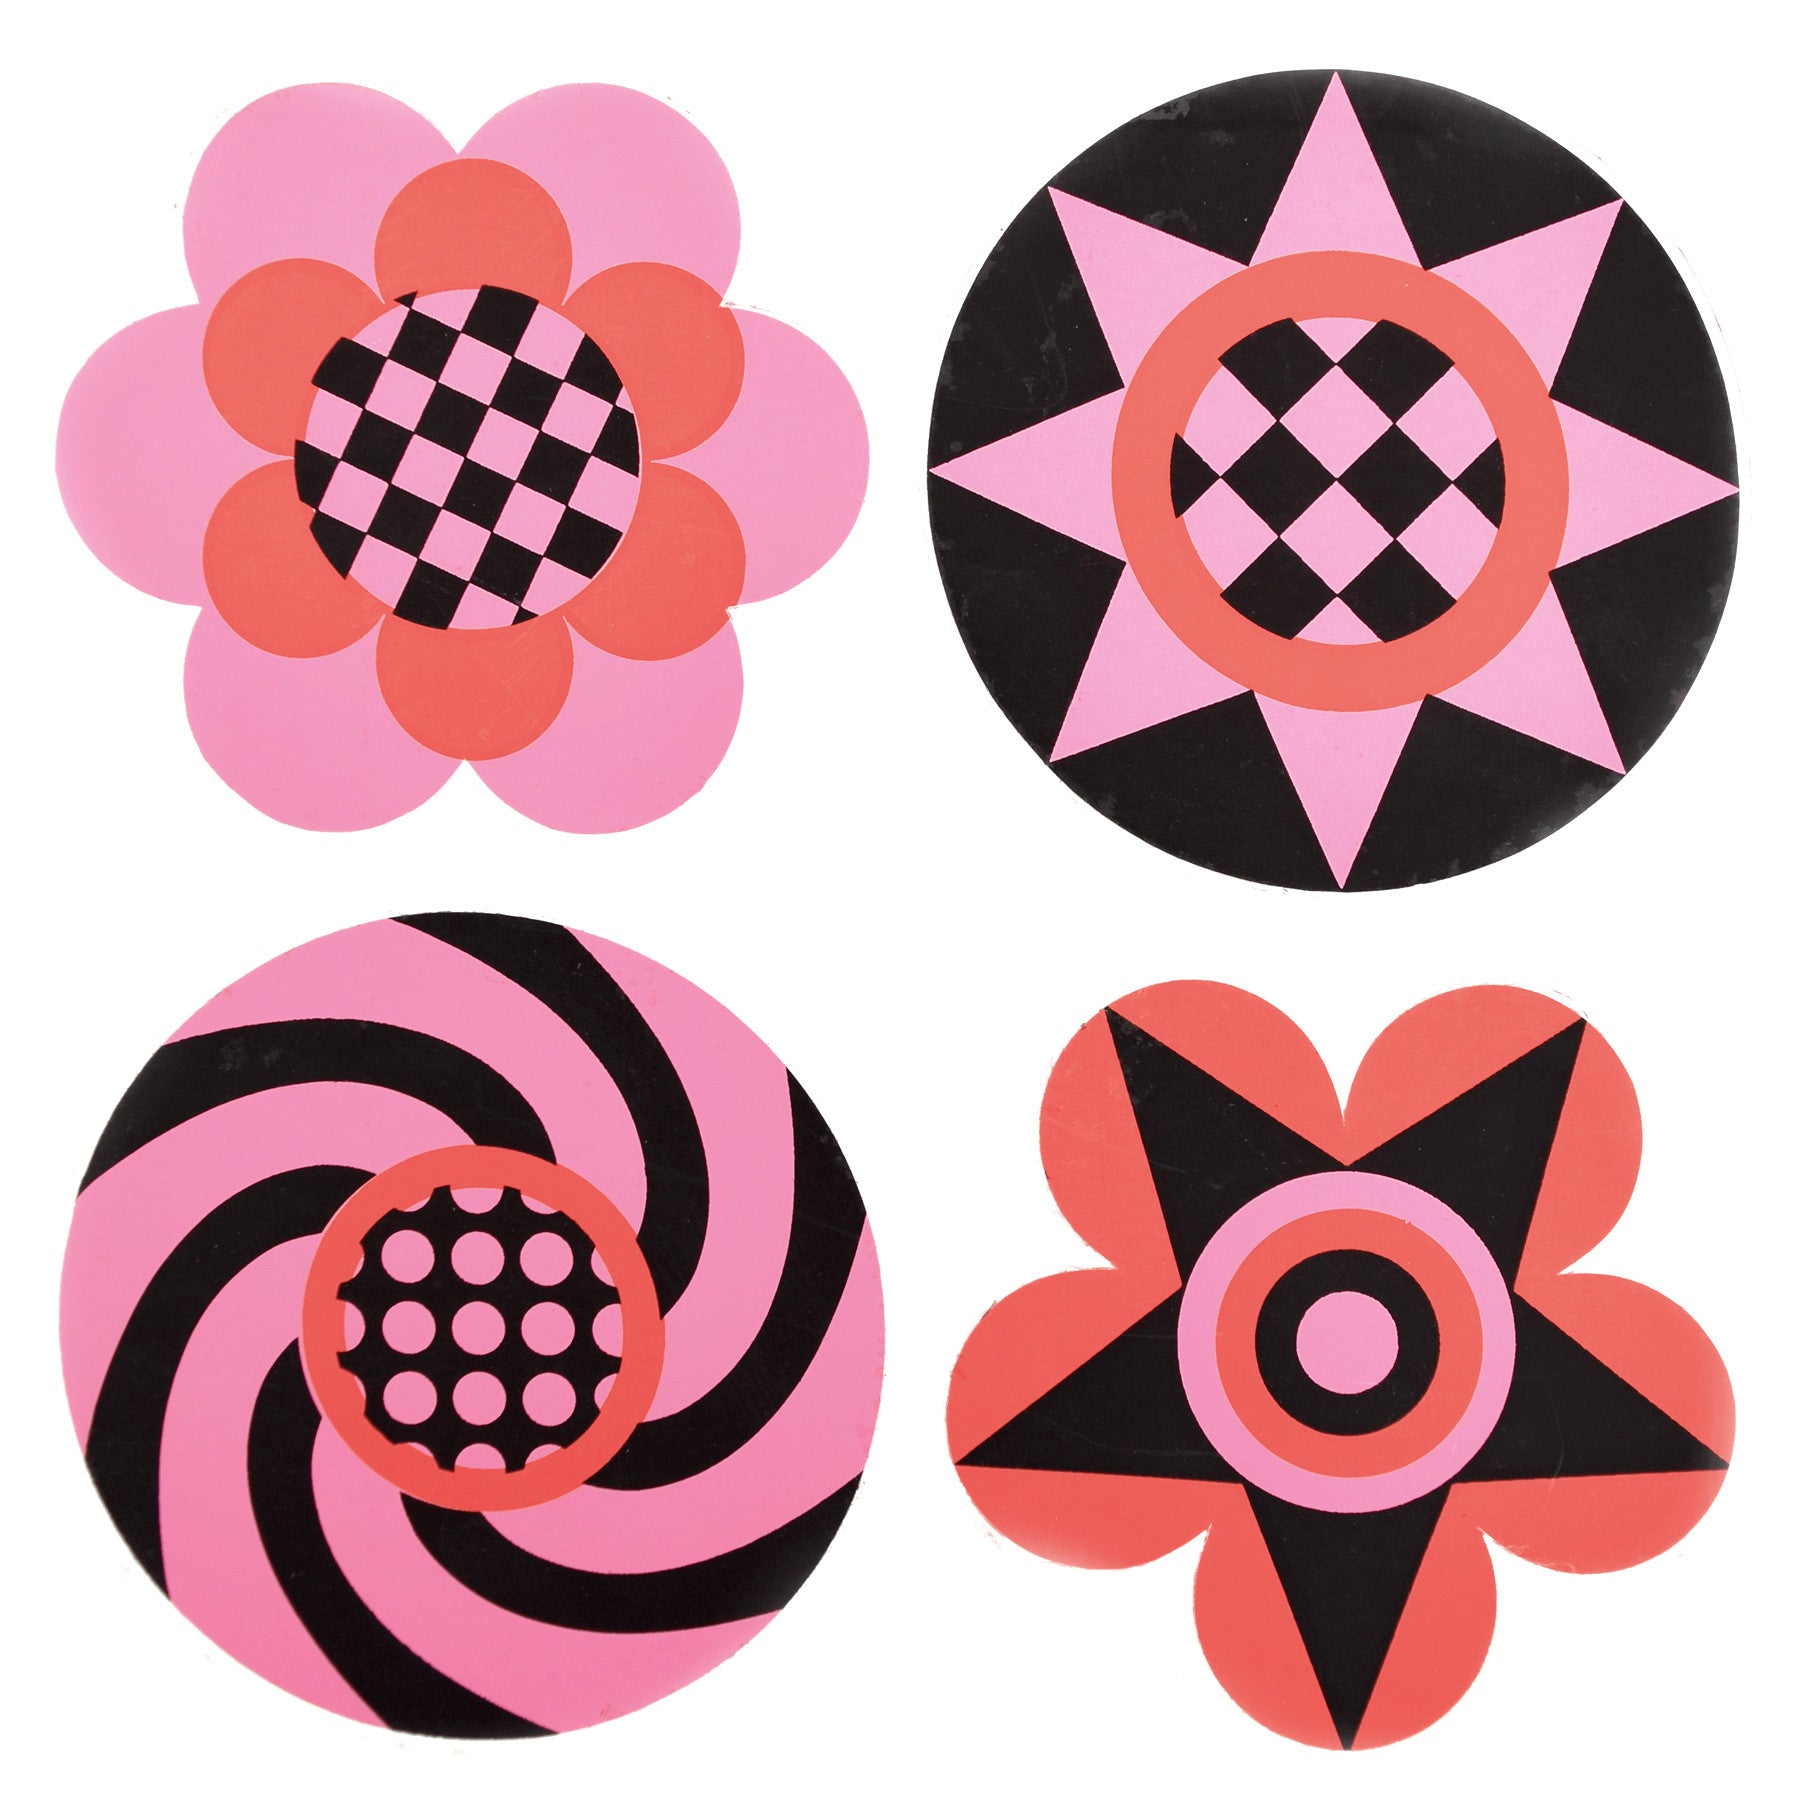 Vintage 1970s Sticker - by Jan Pienkowski - 4 Small Flower Design, Pink, Red & Black